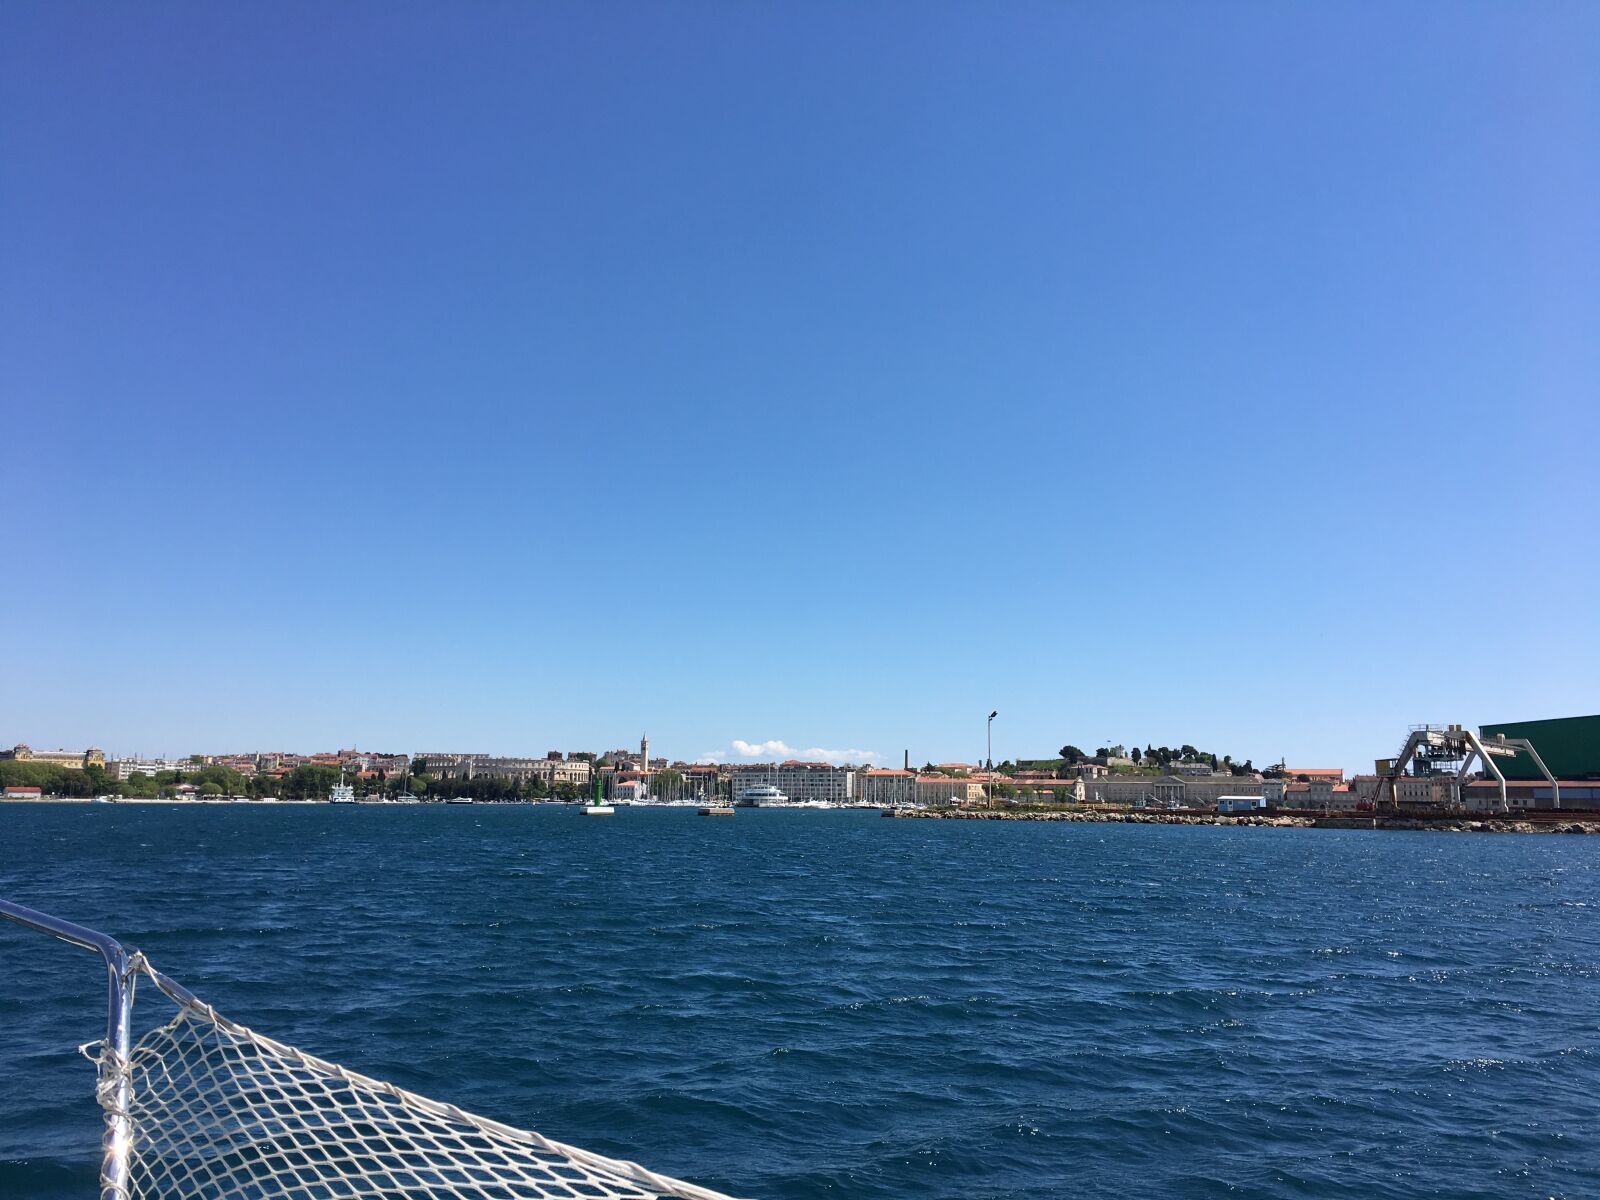 Apple iPhone 6s sample photo. Sea, sailing boat, croatia photography